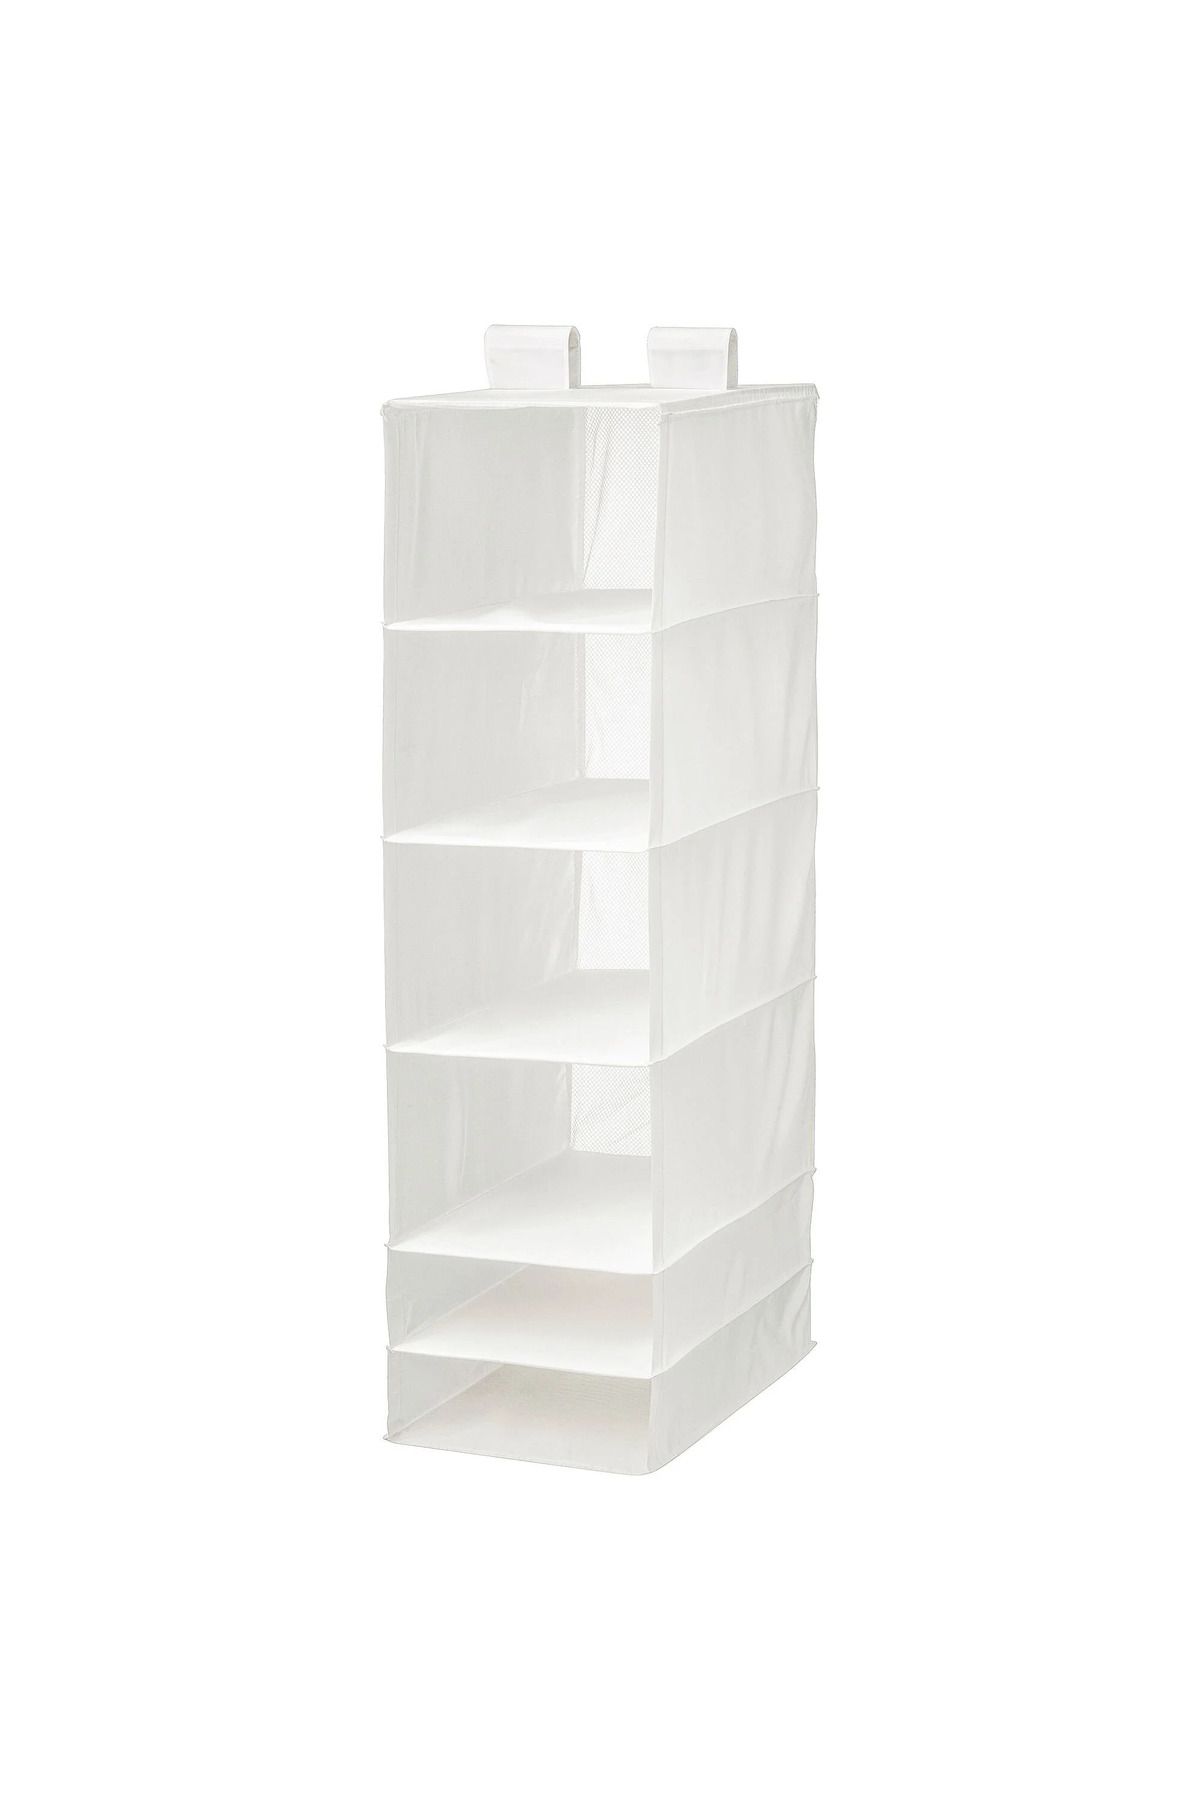 IKEA SKUBB beyaz 35x45x125 cm bölmeli düzenleyici